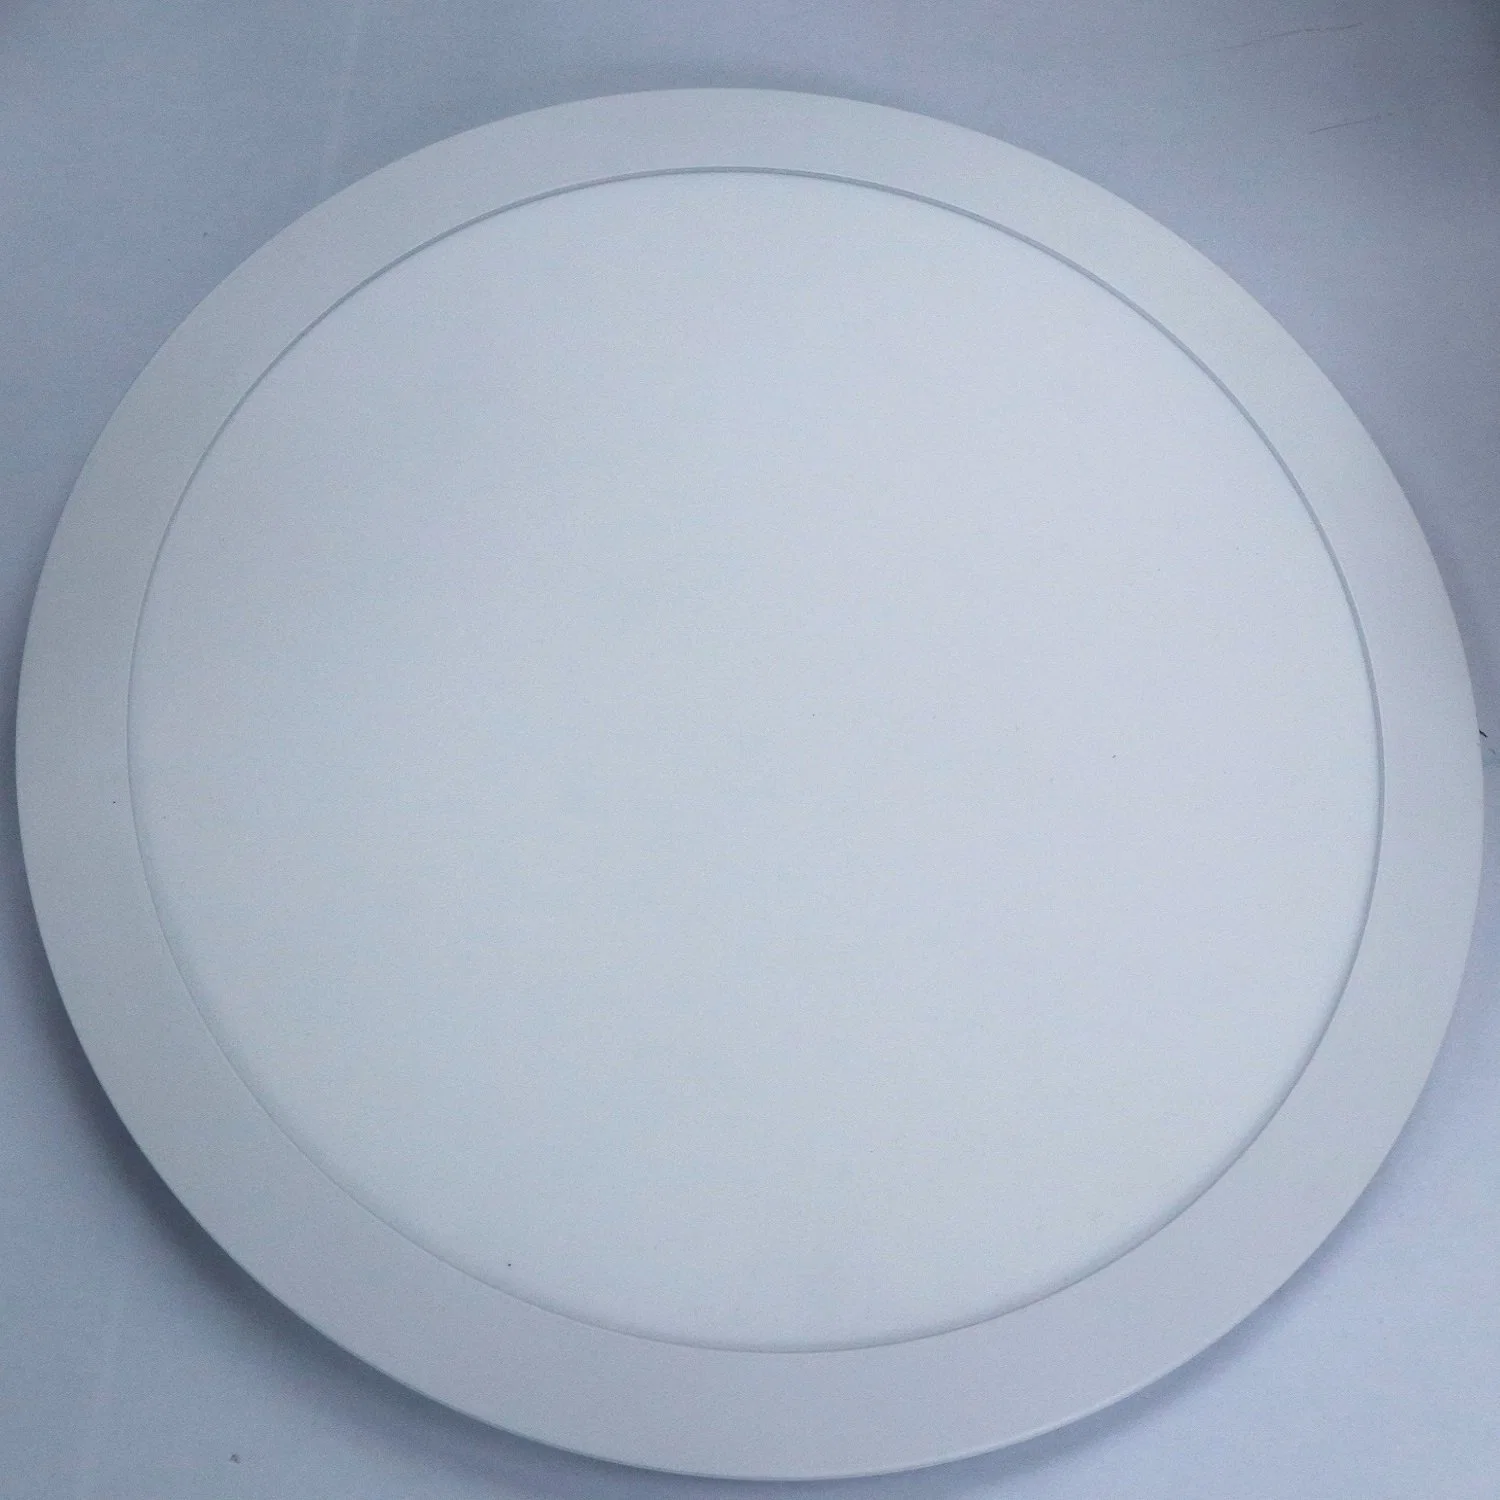 Ultra Thin LED Panel Light Embedded Install for Living Room Bedroom Kitchen Bathroom LED Ceiling Light 24W